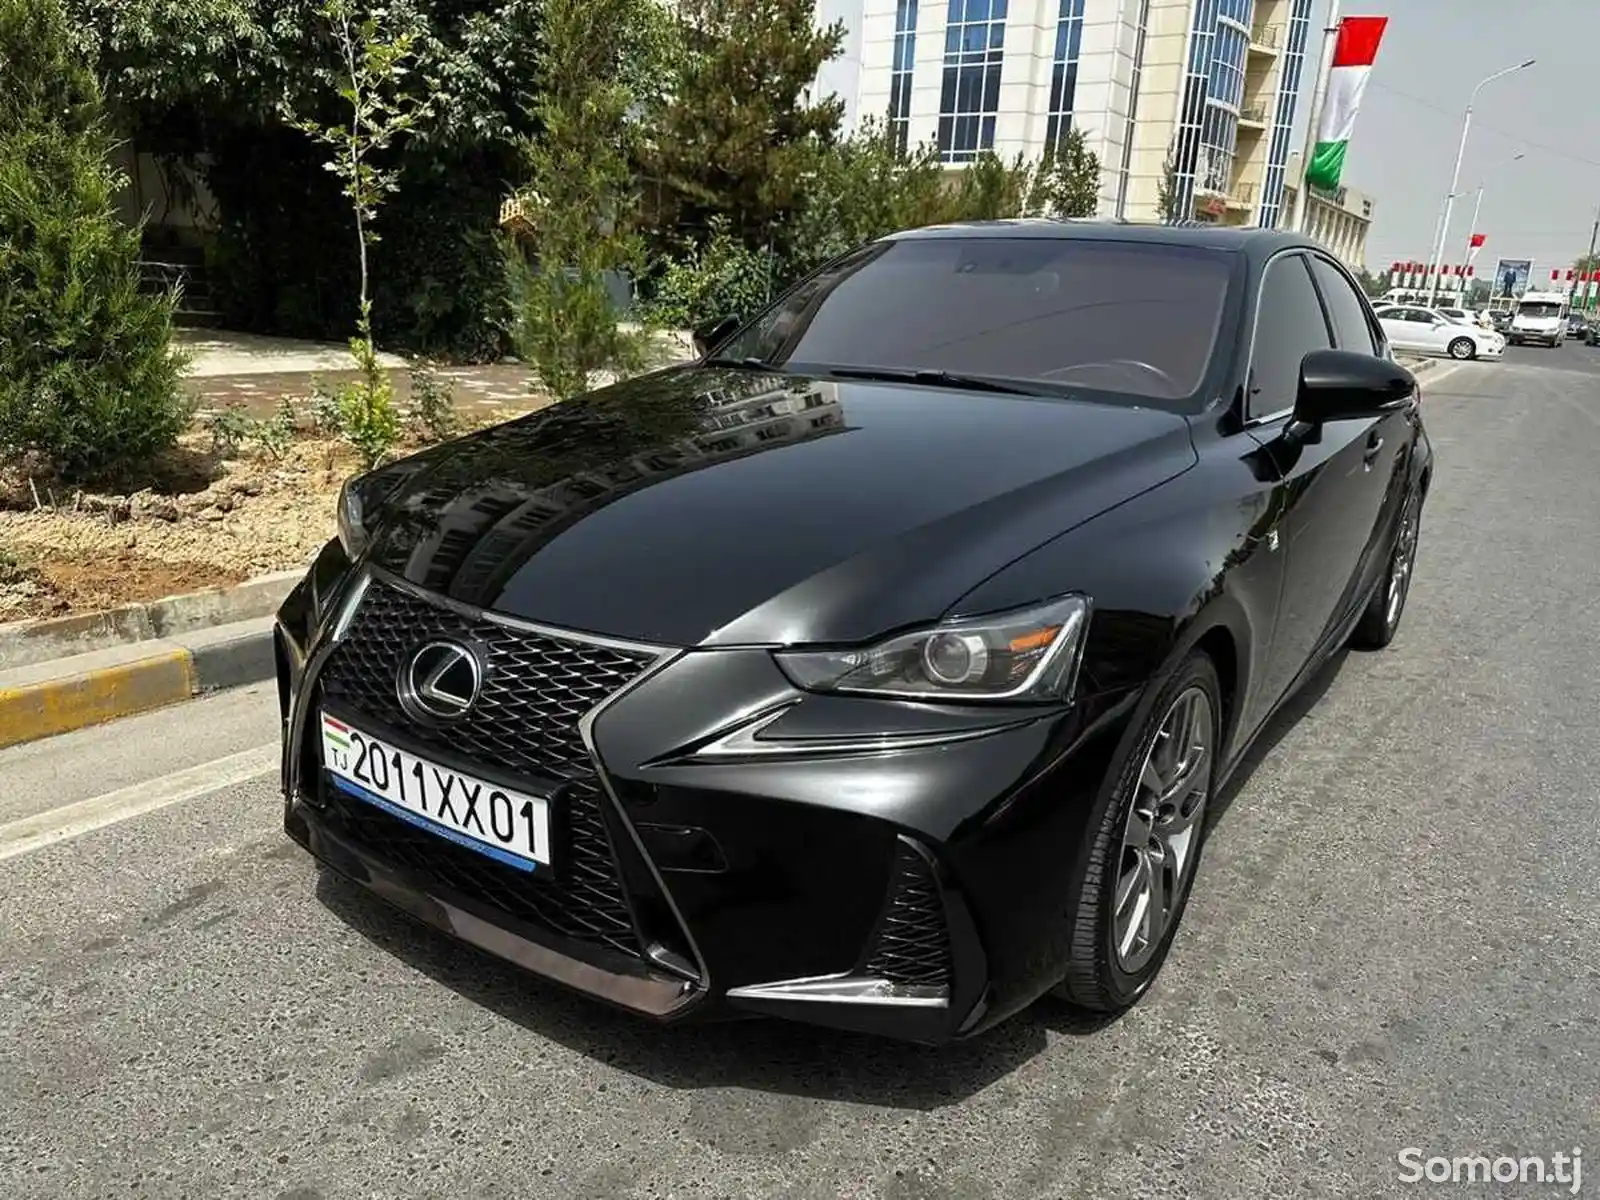 Lexus IS series, 2014-2